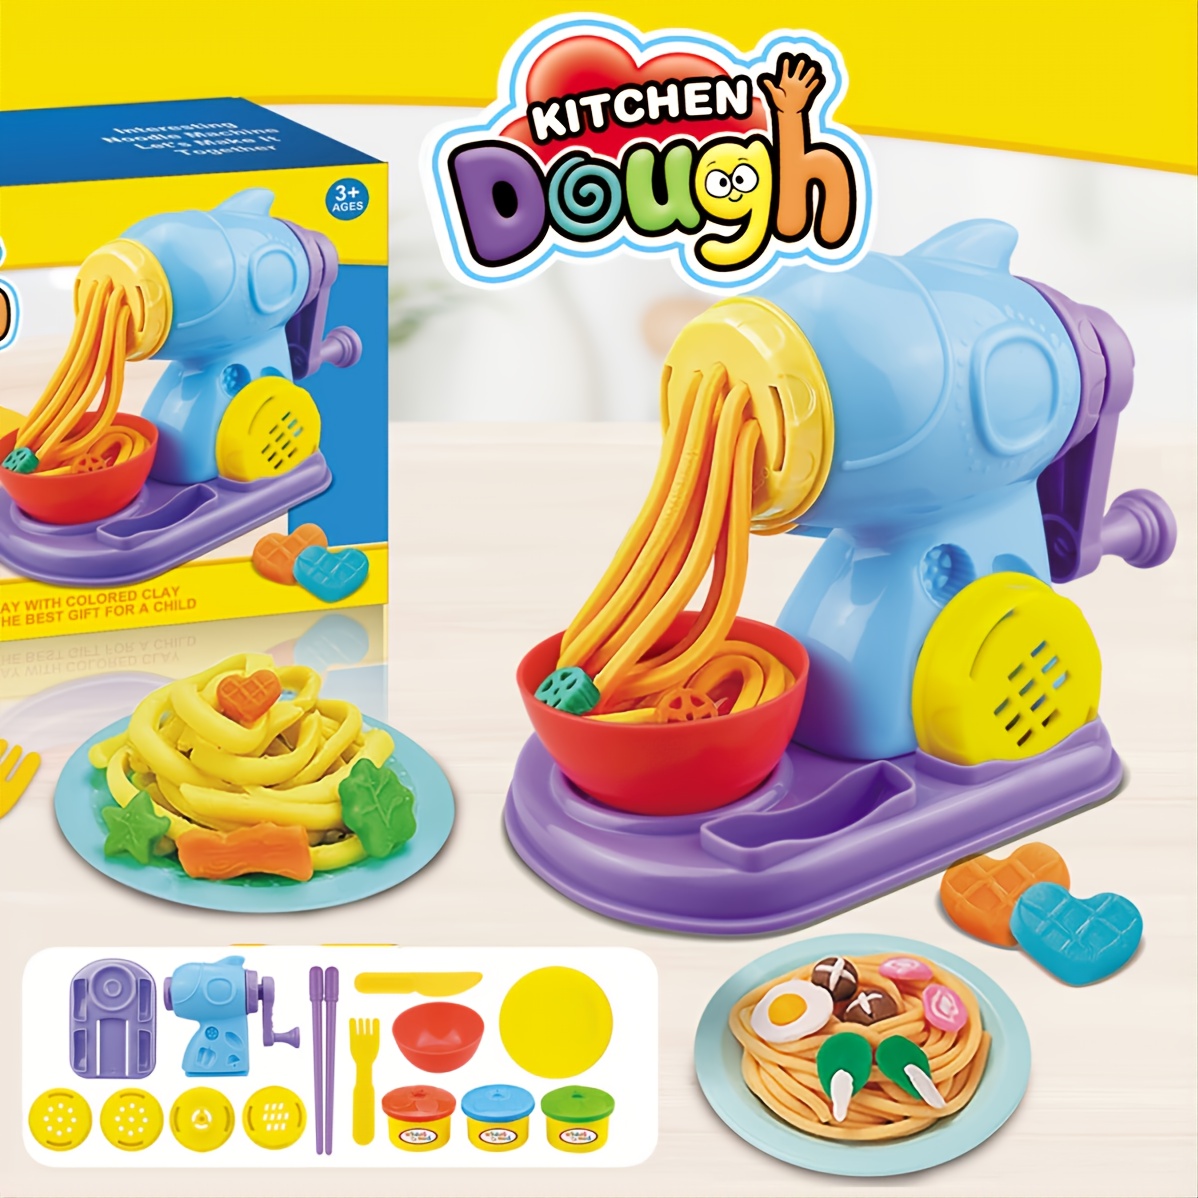 Food Maker Toy Sets